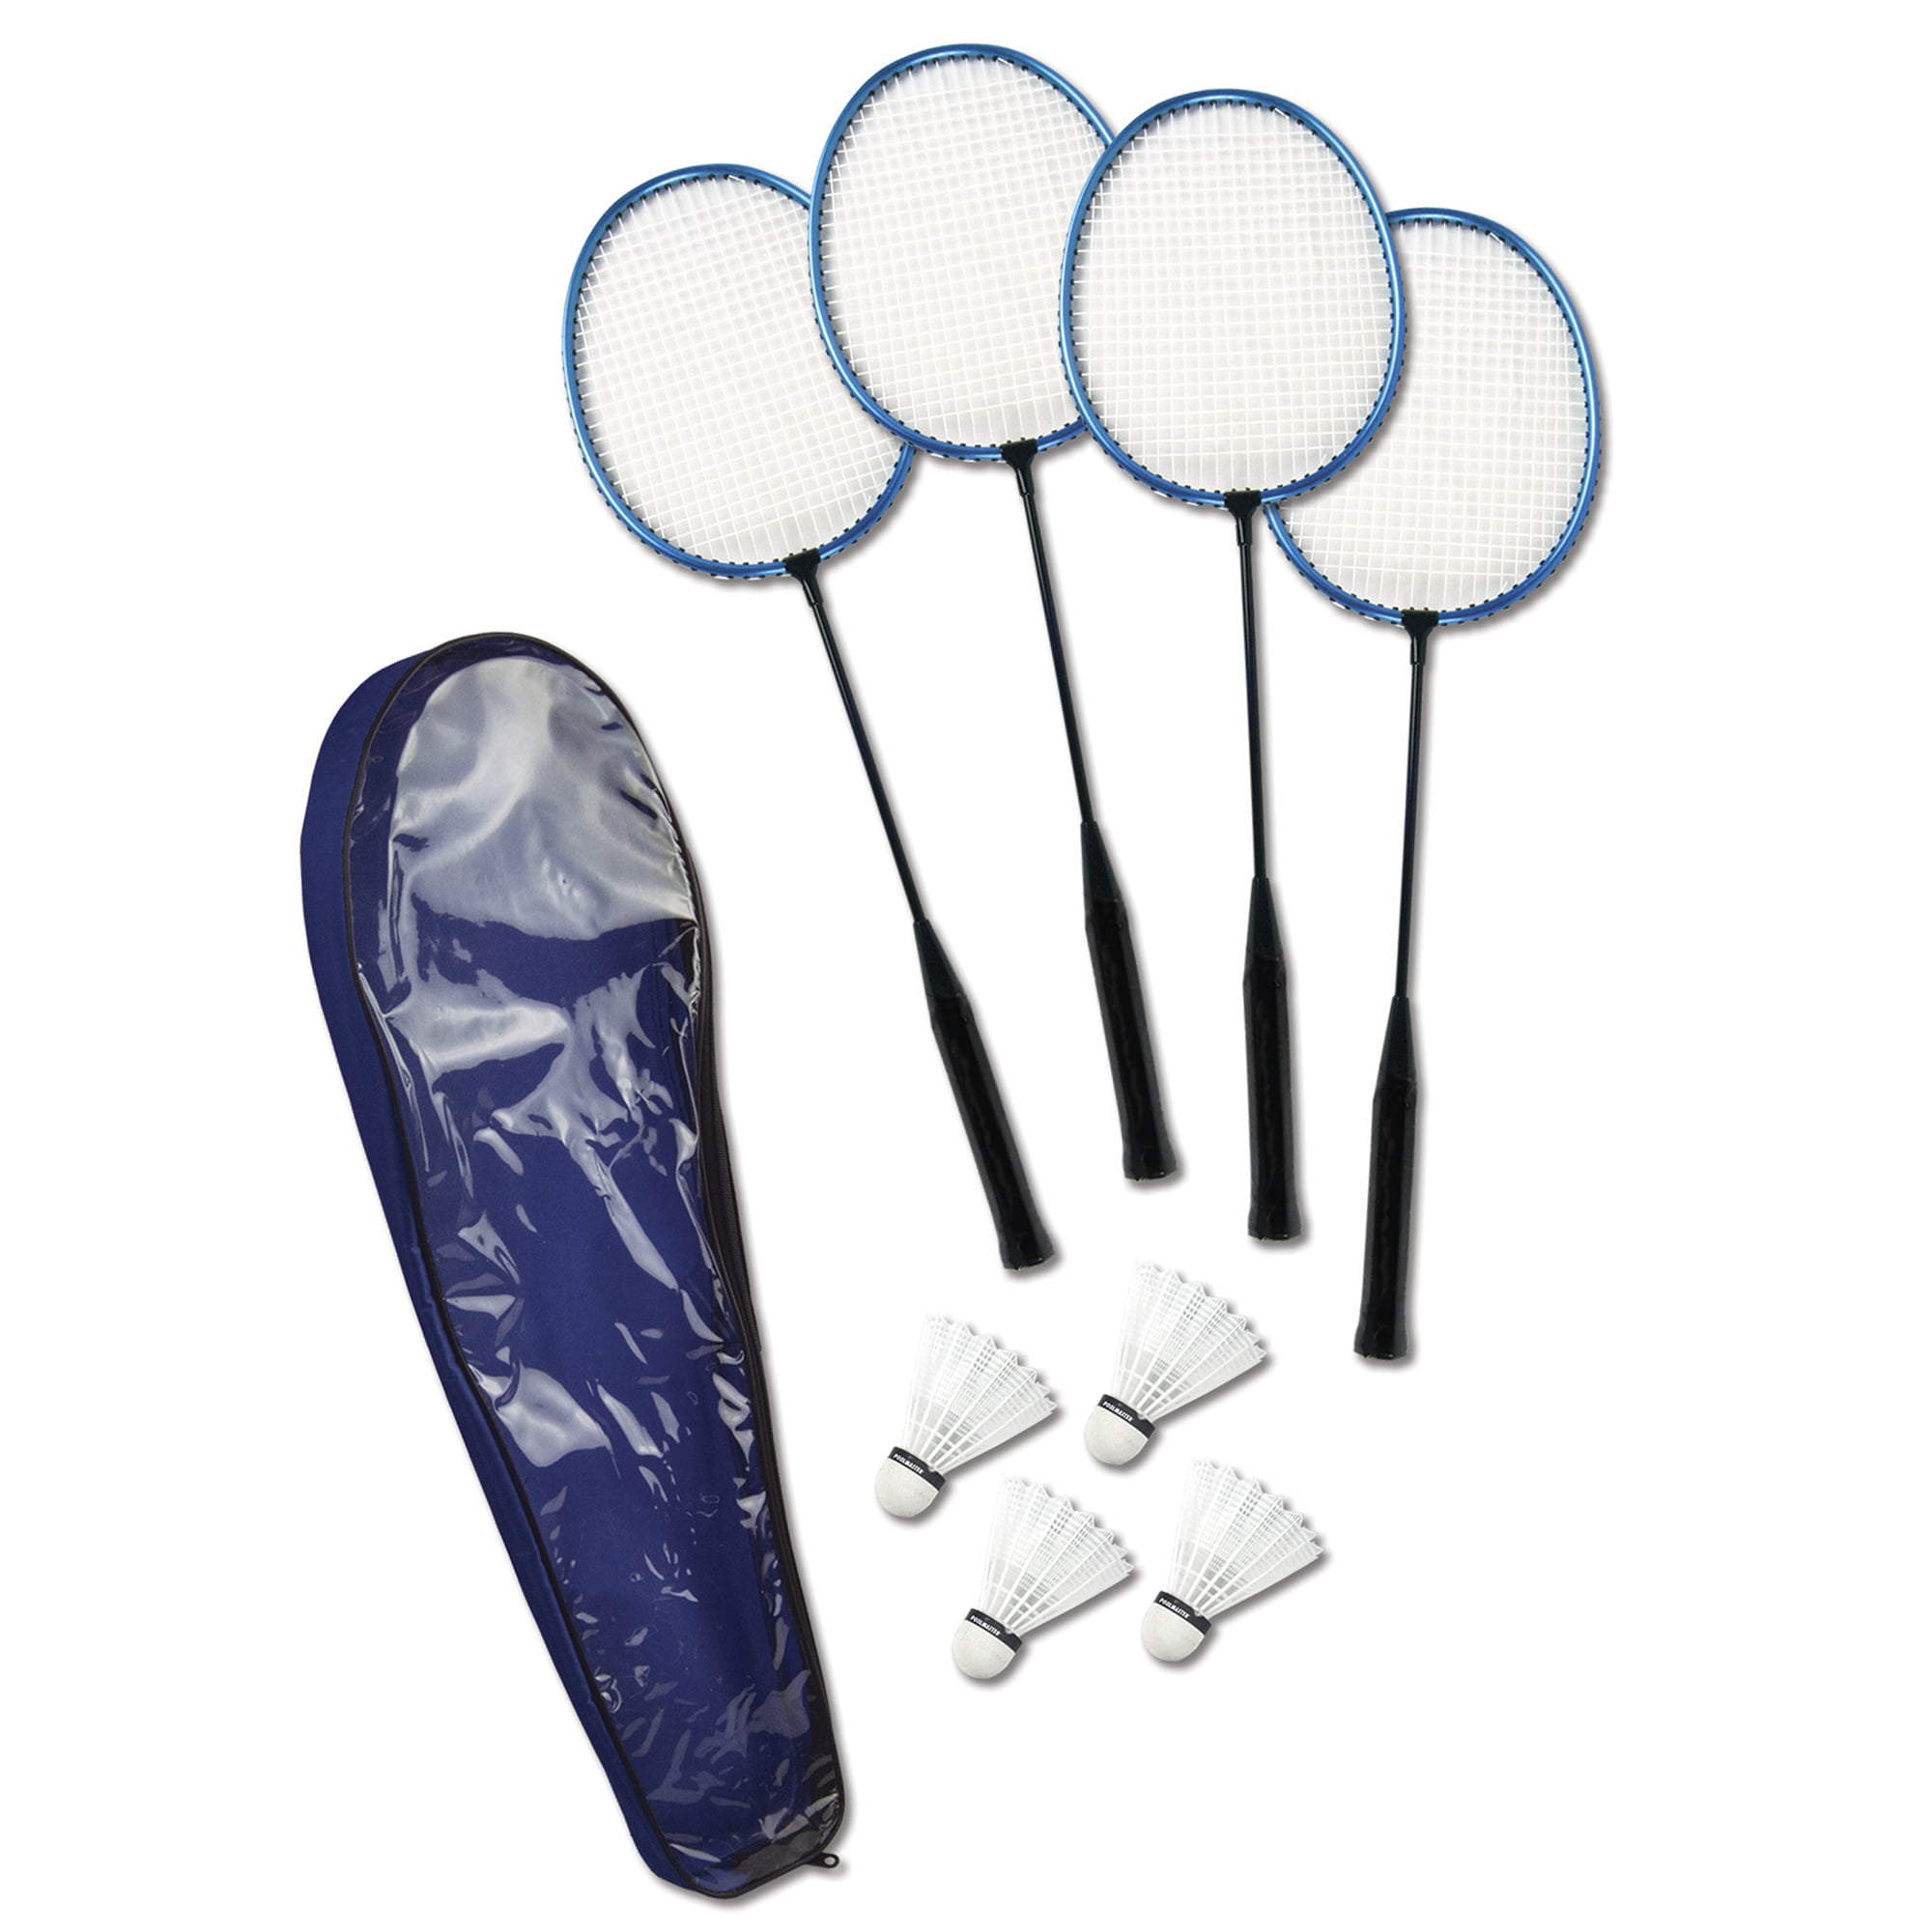 Pluche pop lepel bellen Deluxe Set of 4 Rackets and Birdies Badminton Game with Case - Walmart.com